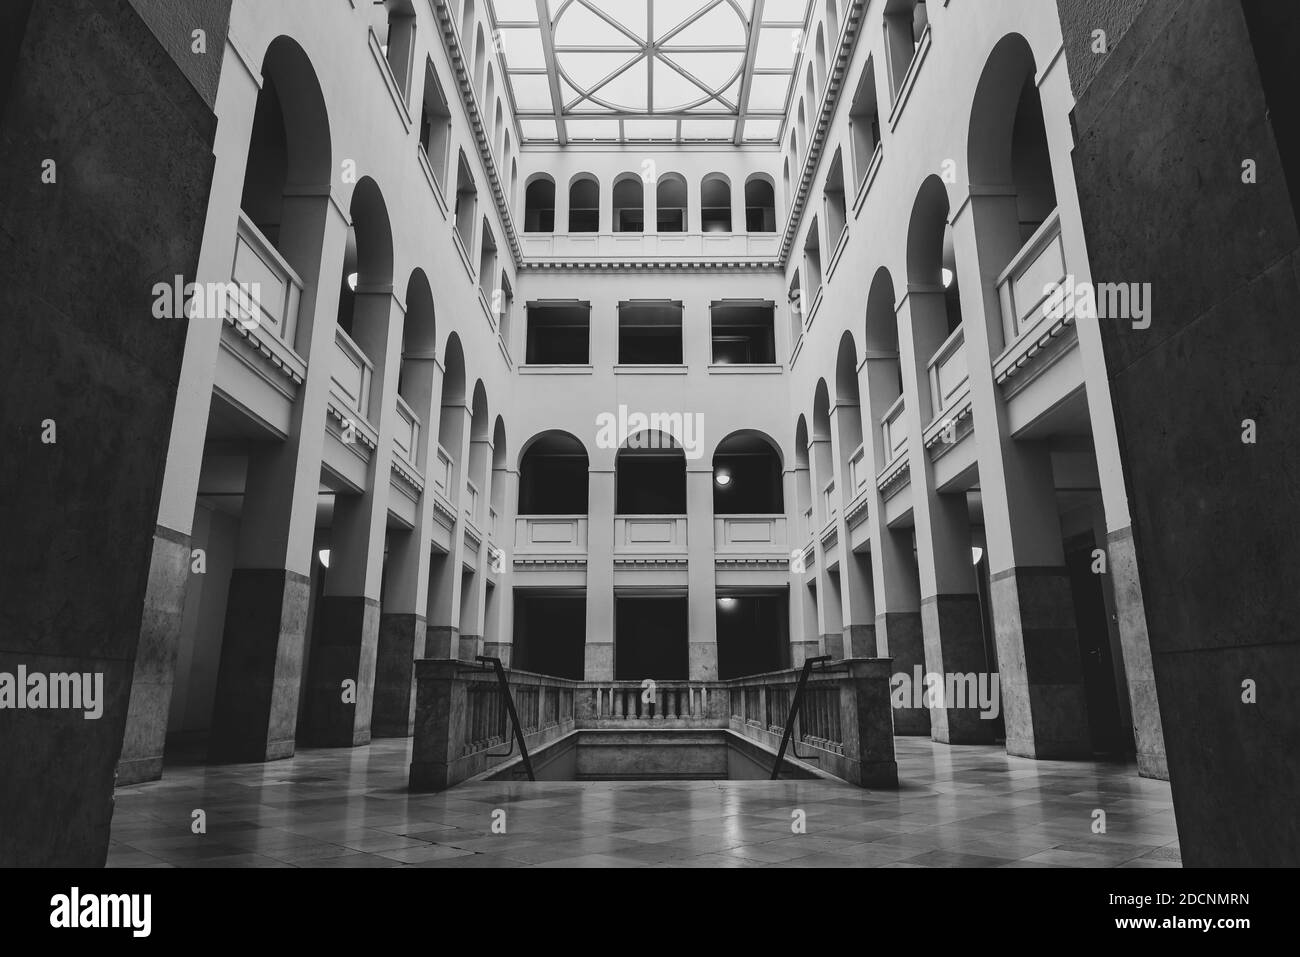 Historisches Atrium im Peter Behrens Gebäude Berlin, schönes helles Atrium, Atrium mit Bögen, öffentliches Gebäude, schwarz-weiß Foto Stockfoto